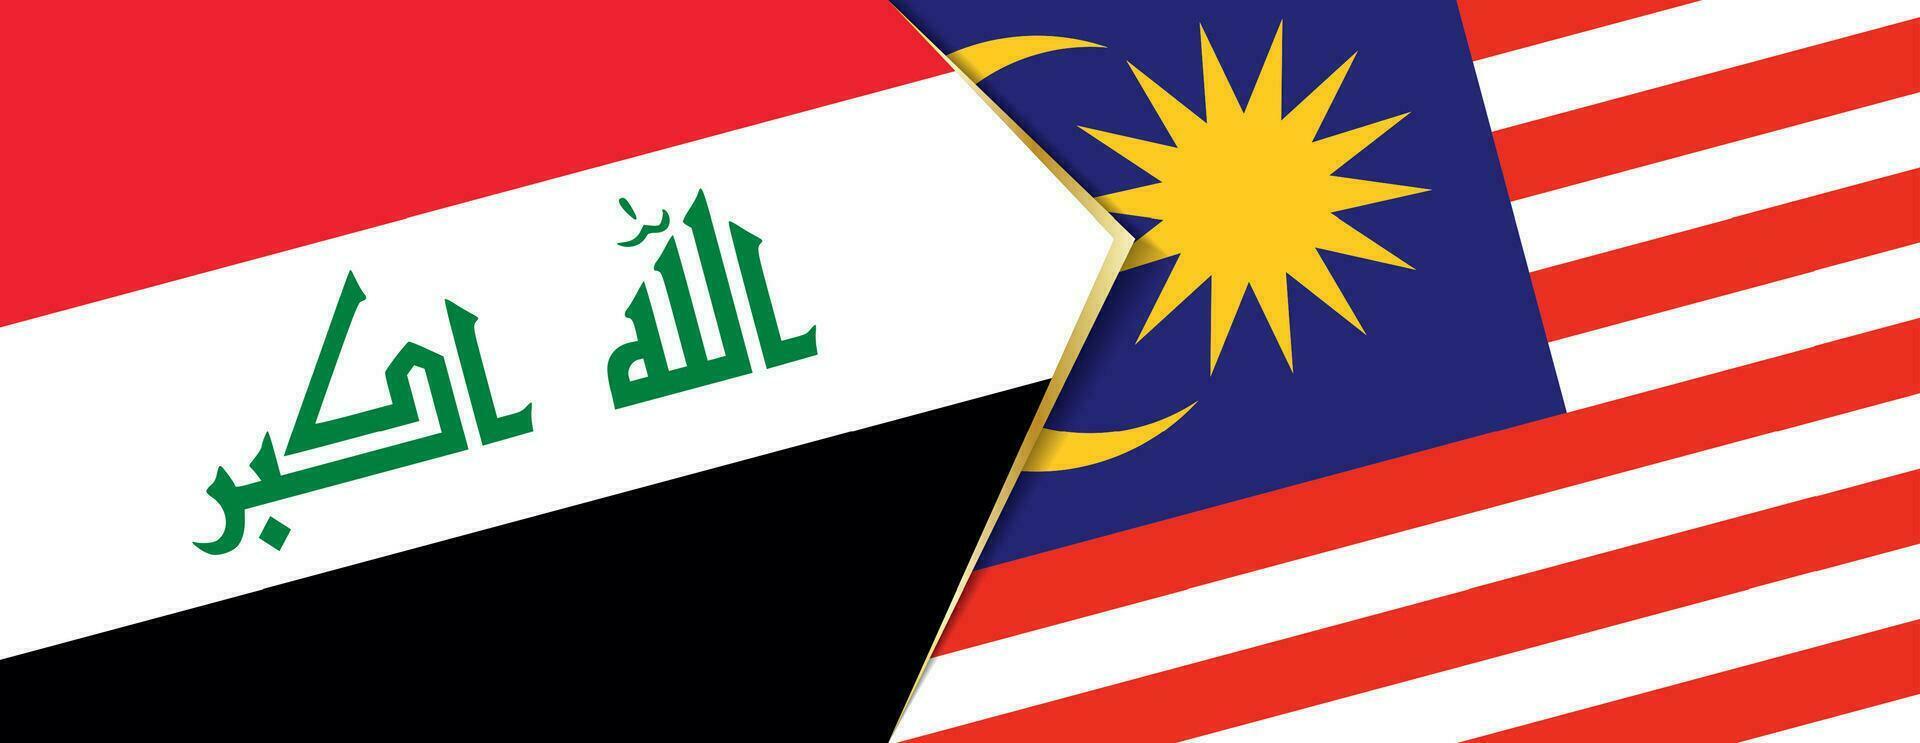 Irak y Malasia banderas, dos vector banderas